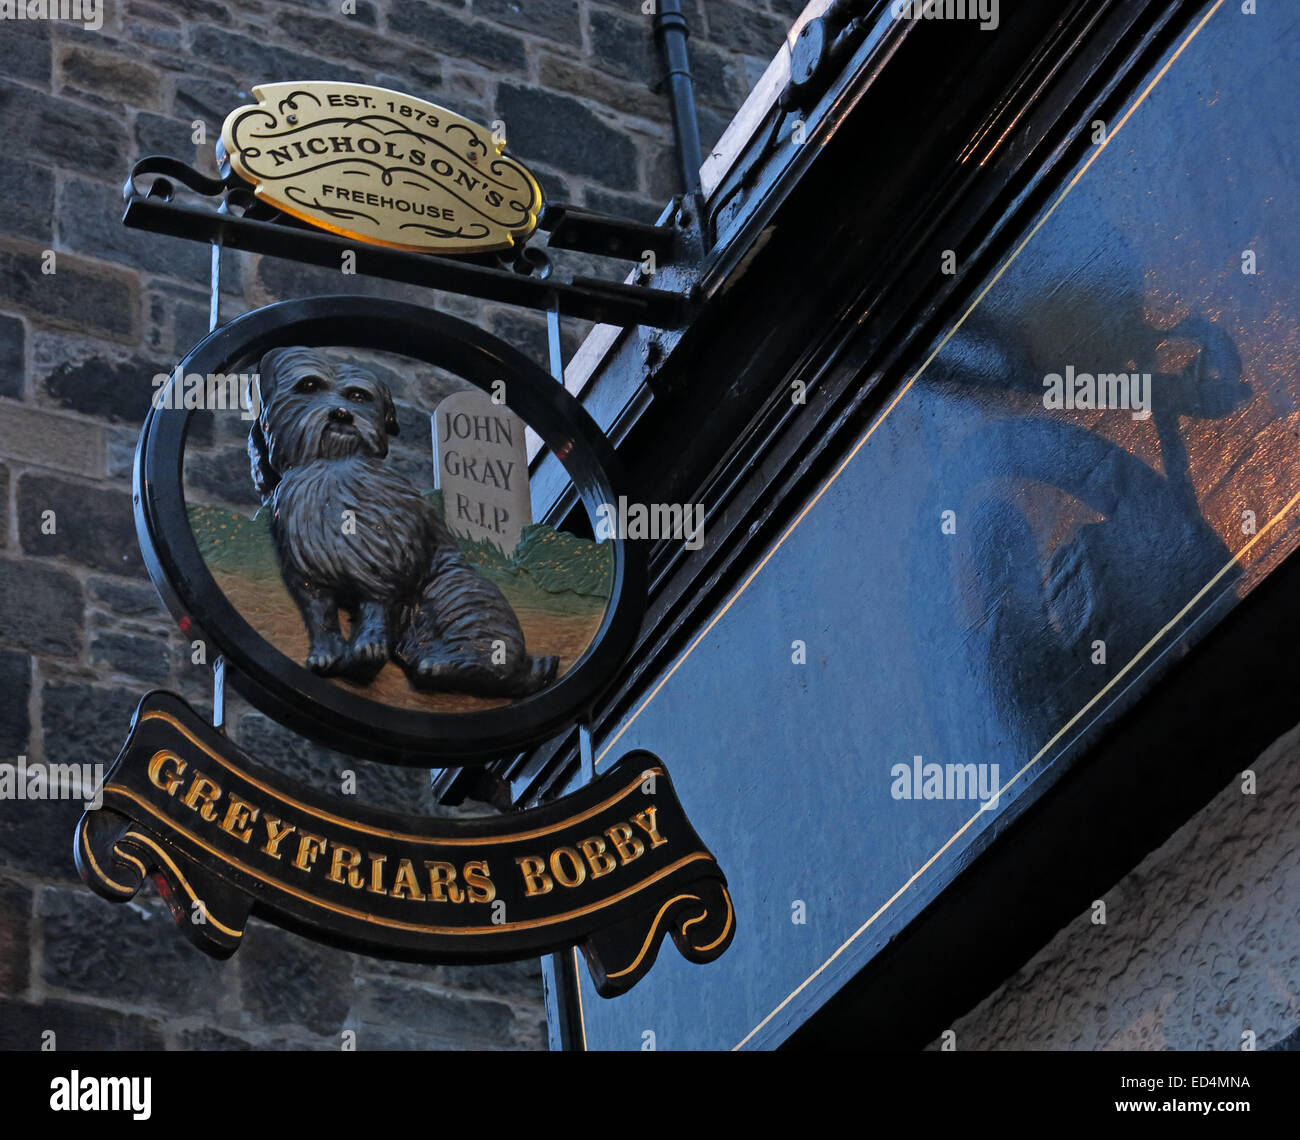 Kampa pub historique enseigne à l'extérieur, à la tombée de la vieille ville d'Édimbourg, le chien à l'extérieur, Lothians, Ecosse, Royaume-Uni Banque D'Images